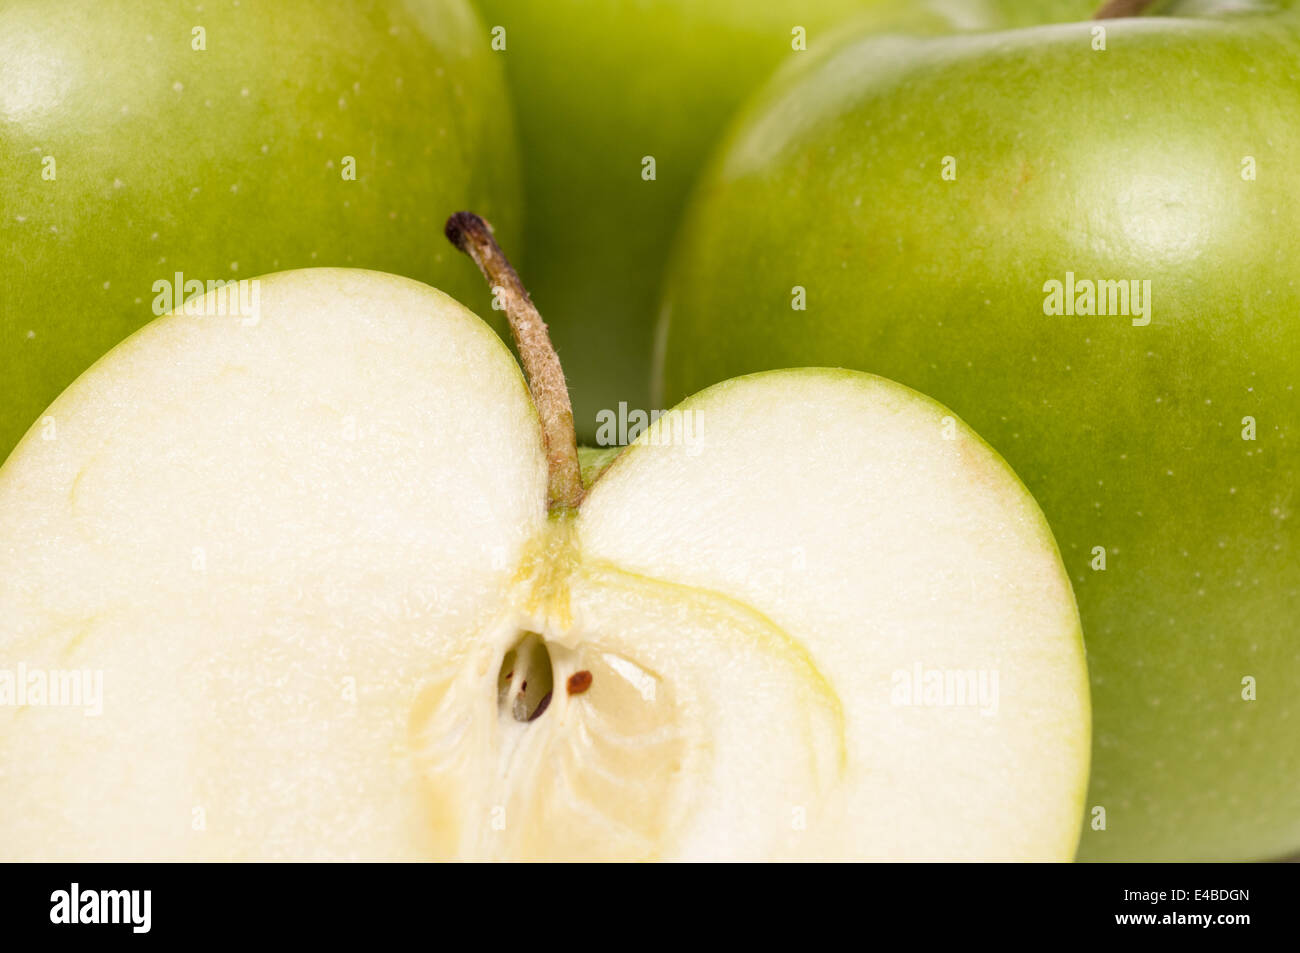 Closeup of a Golden Delicious apple Stock Photo